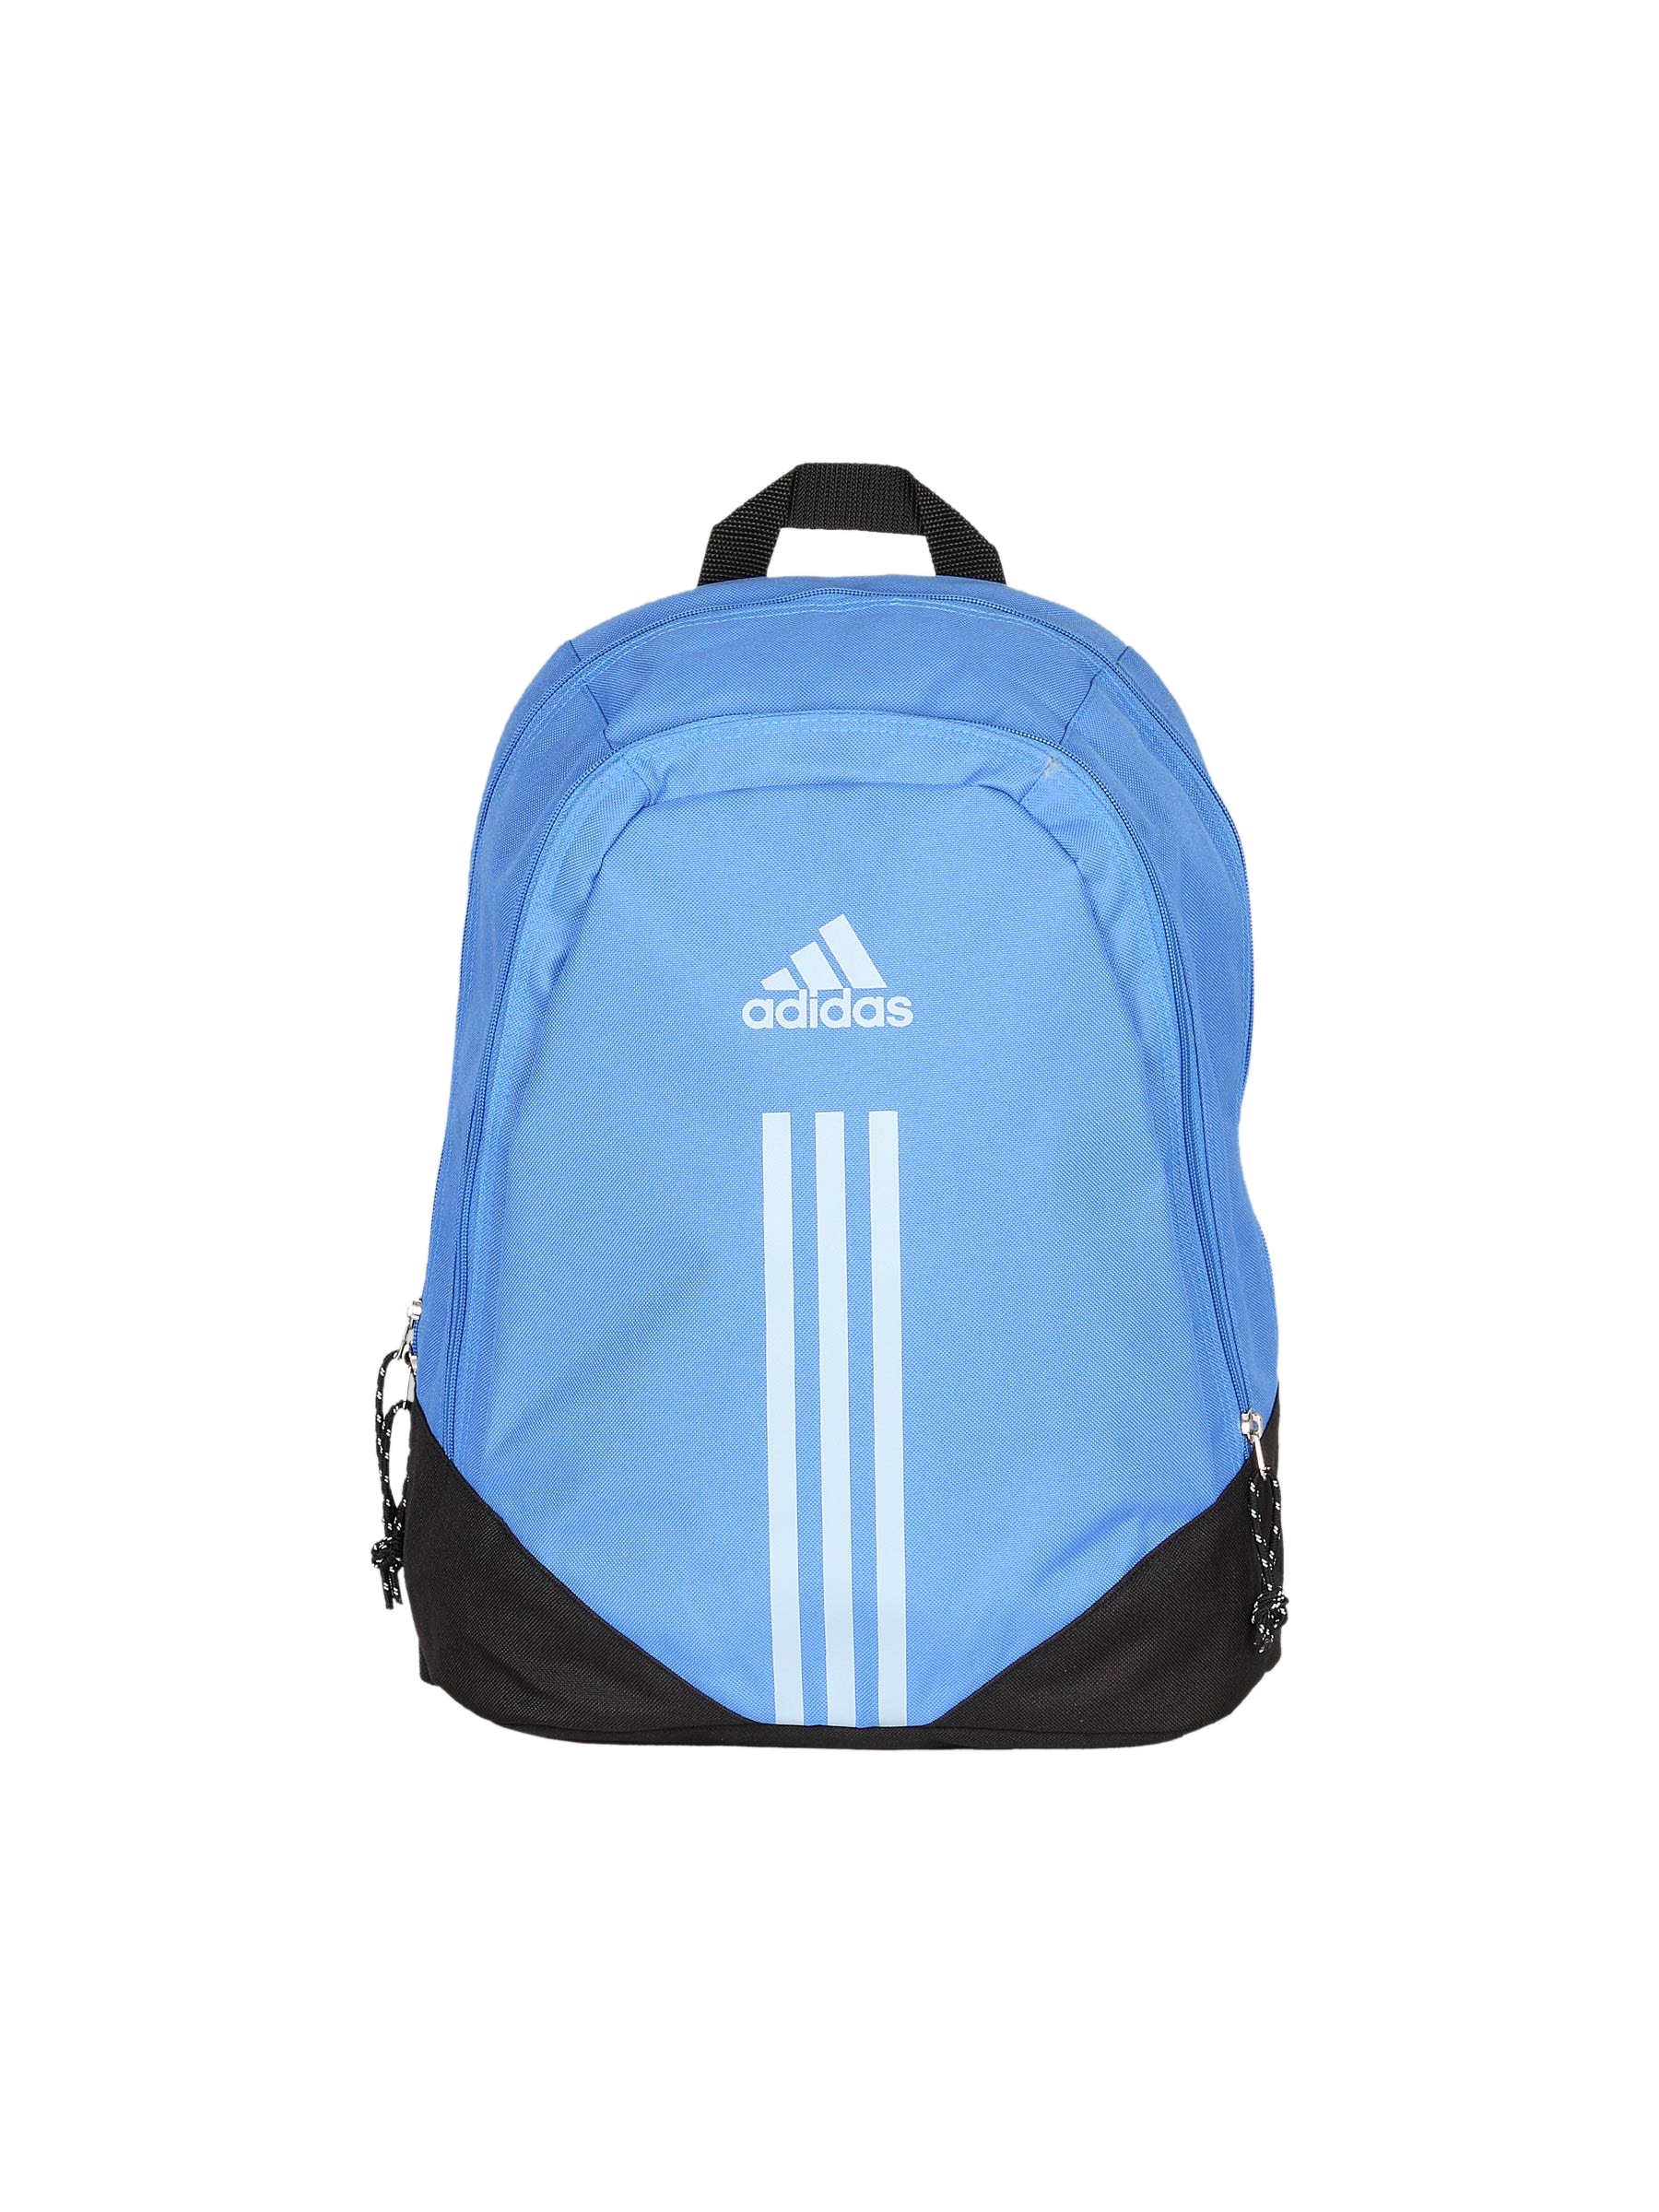 ADIDAS Unisex 3S Blue Black Backpack